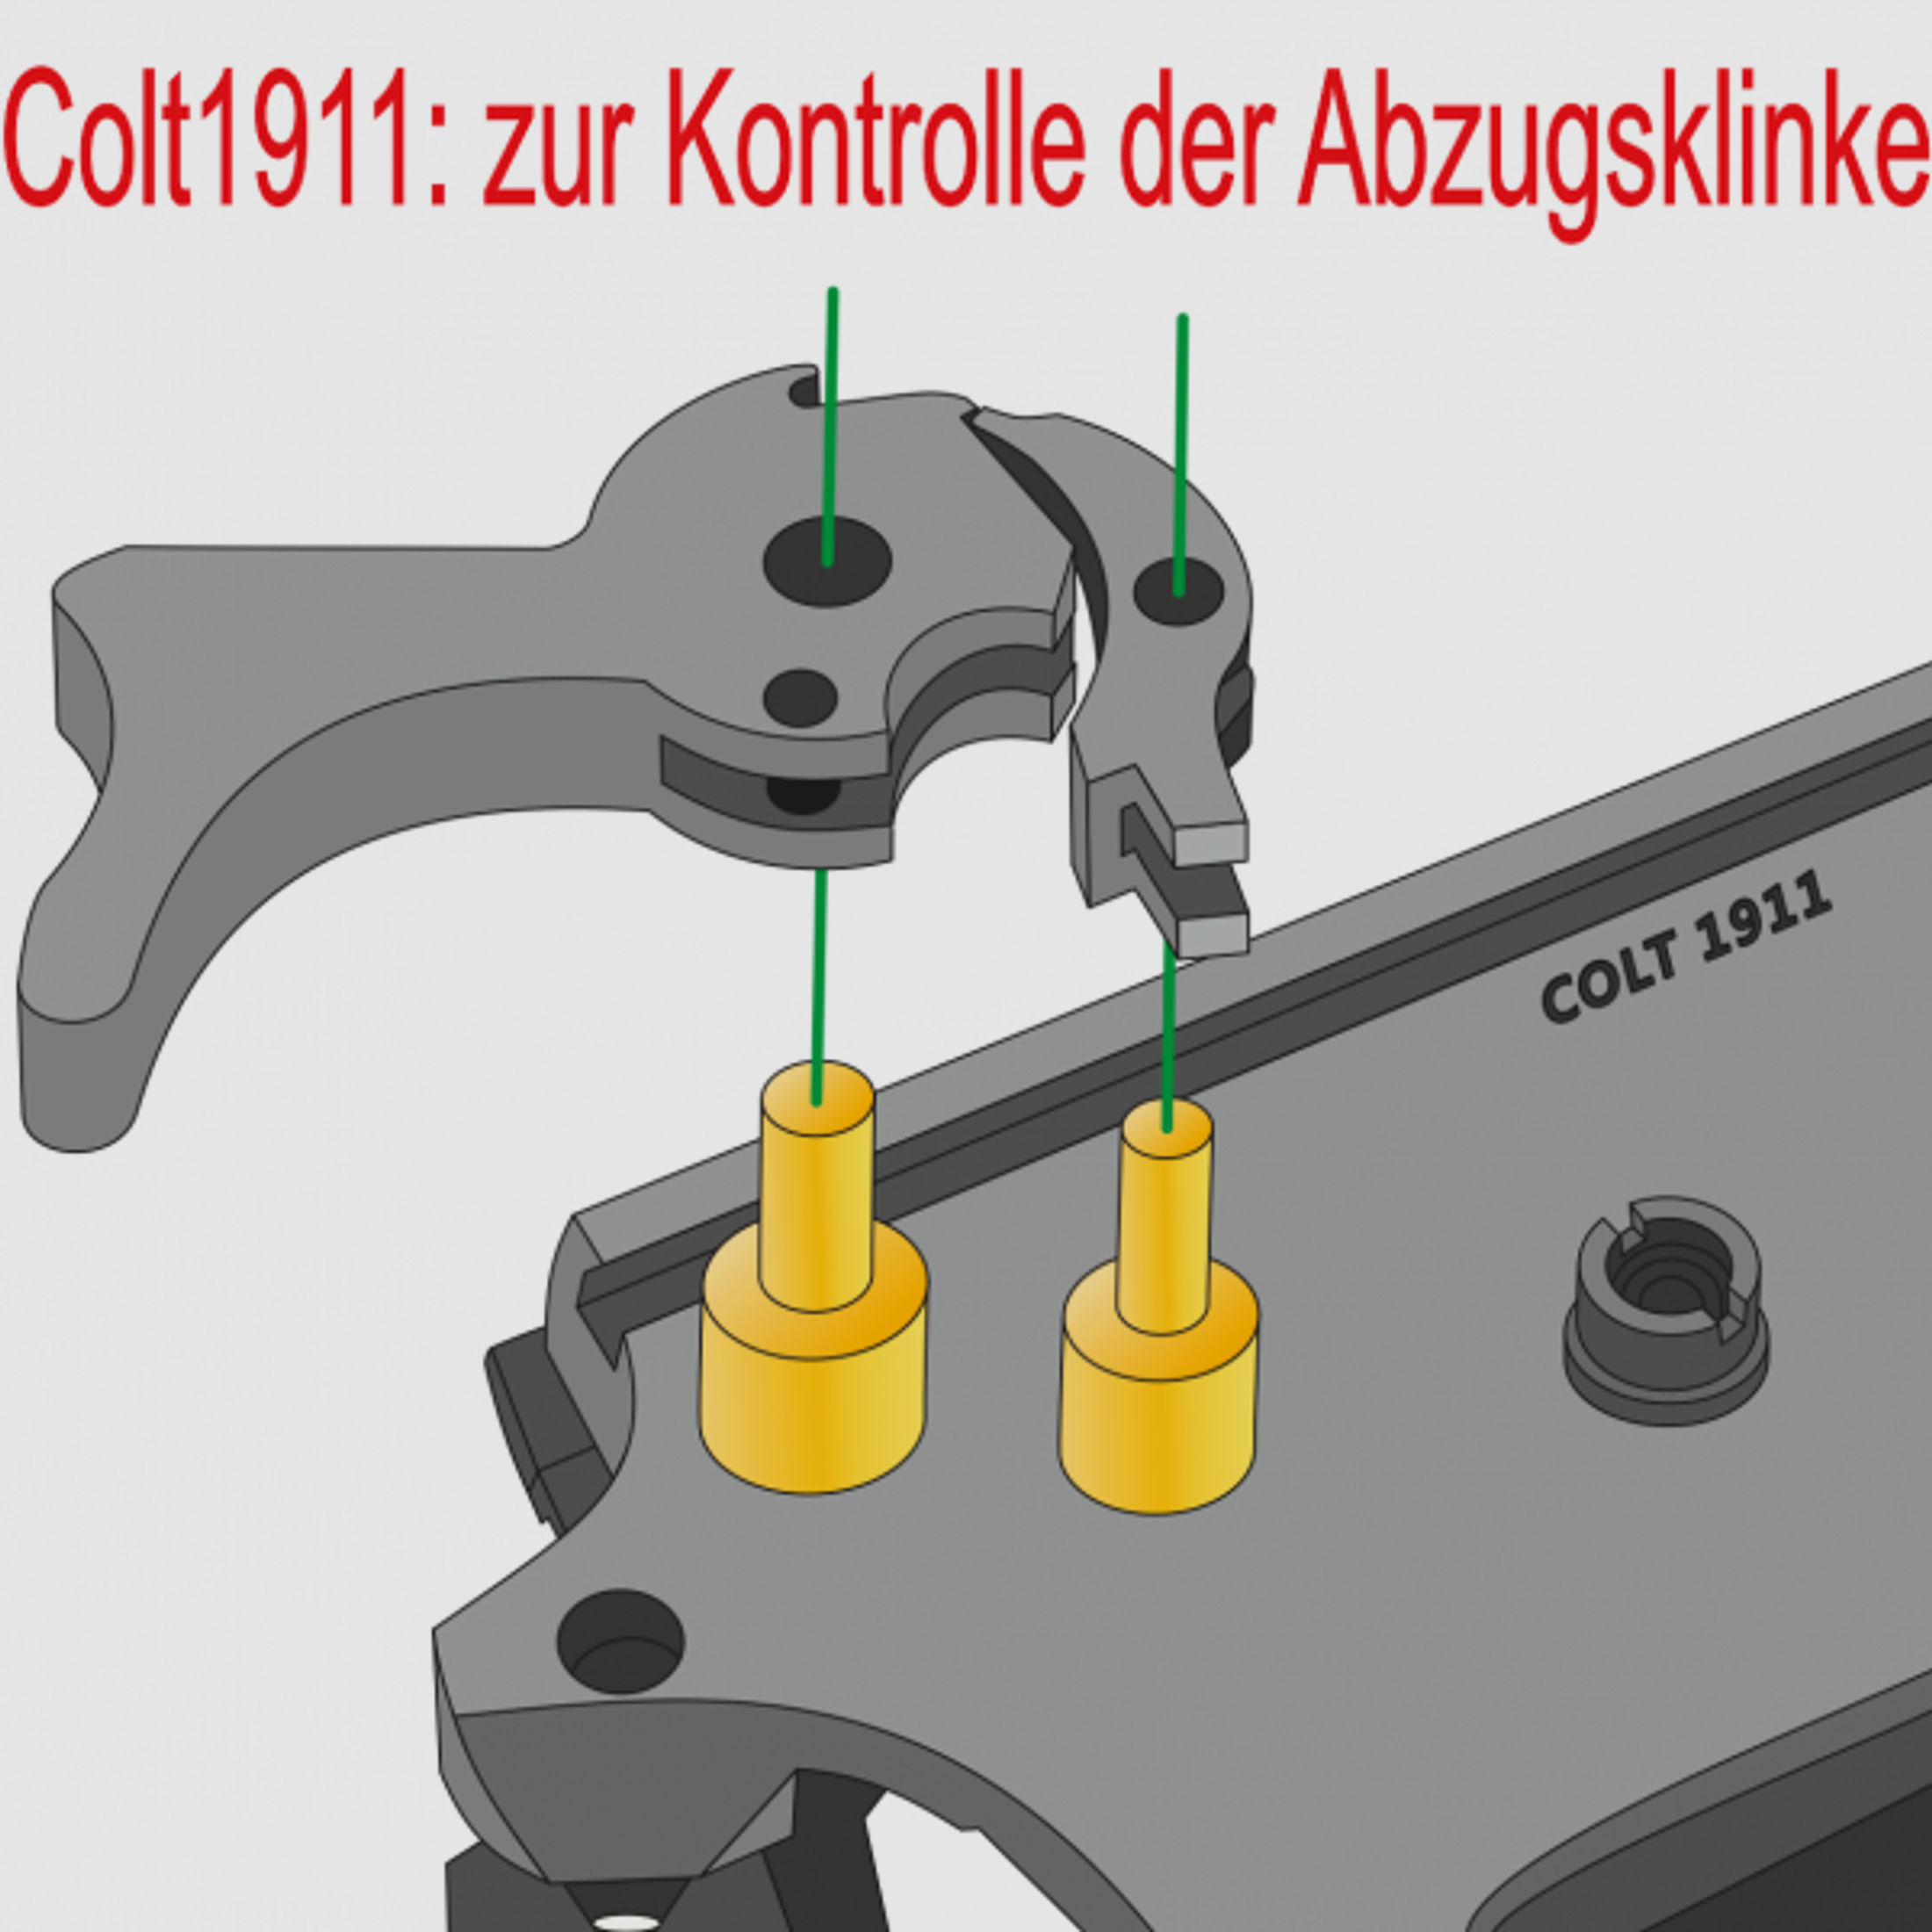 Colt 1911: Prüfstifte für die Abzugsklinke - einfache Kontrolle von Hammer & sear!  --> NEU & Top <-